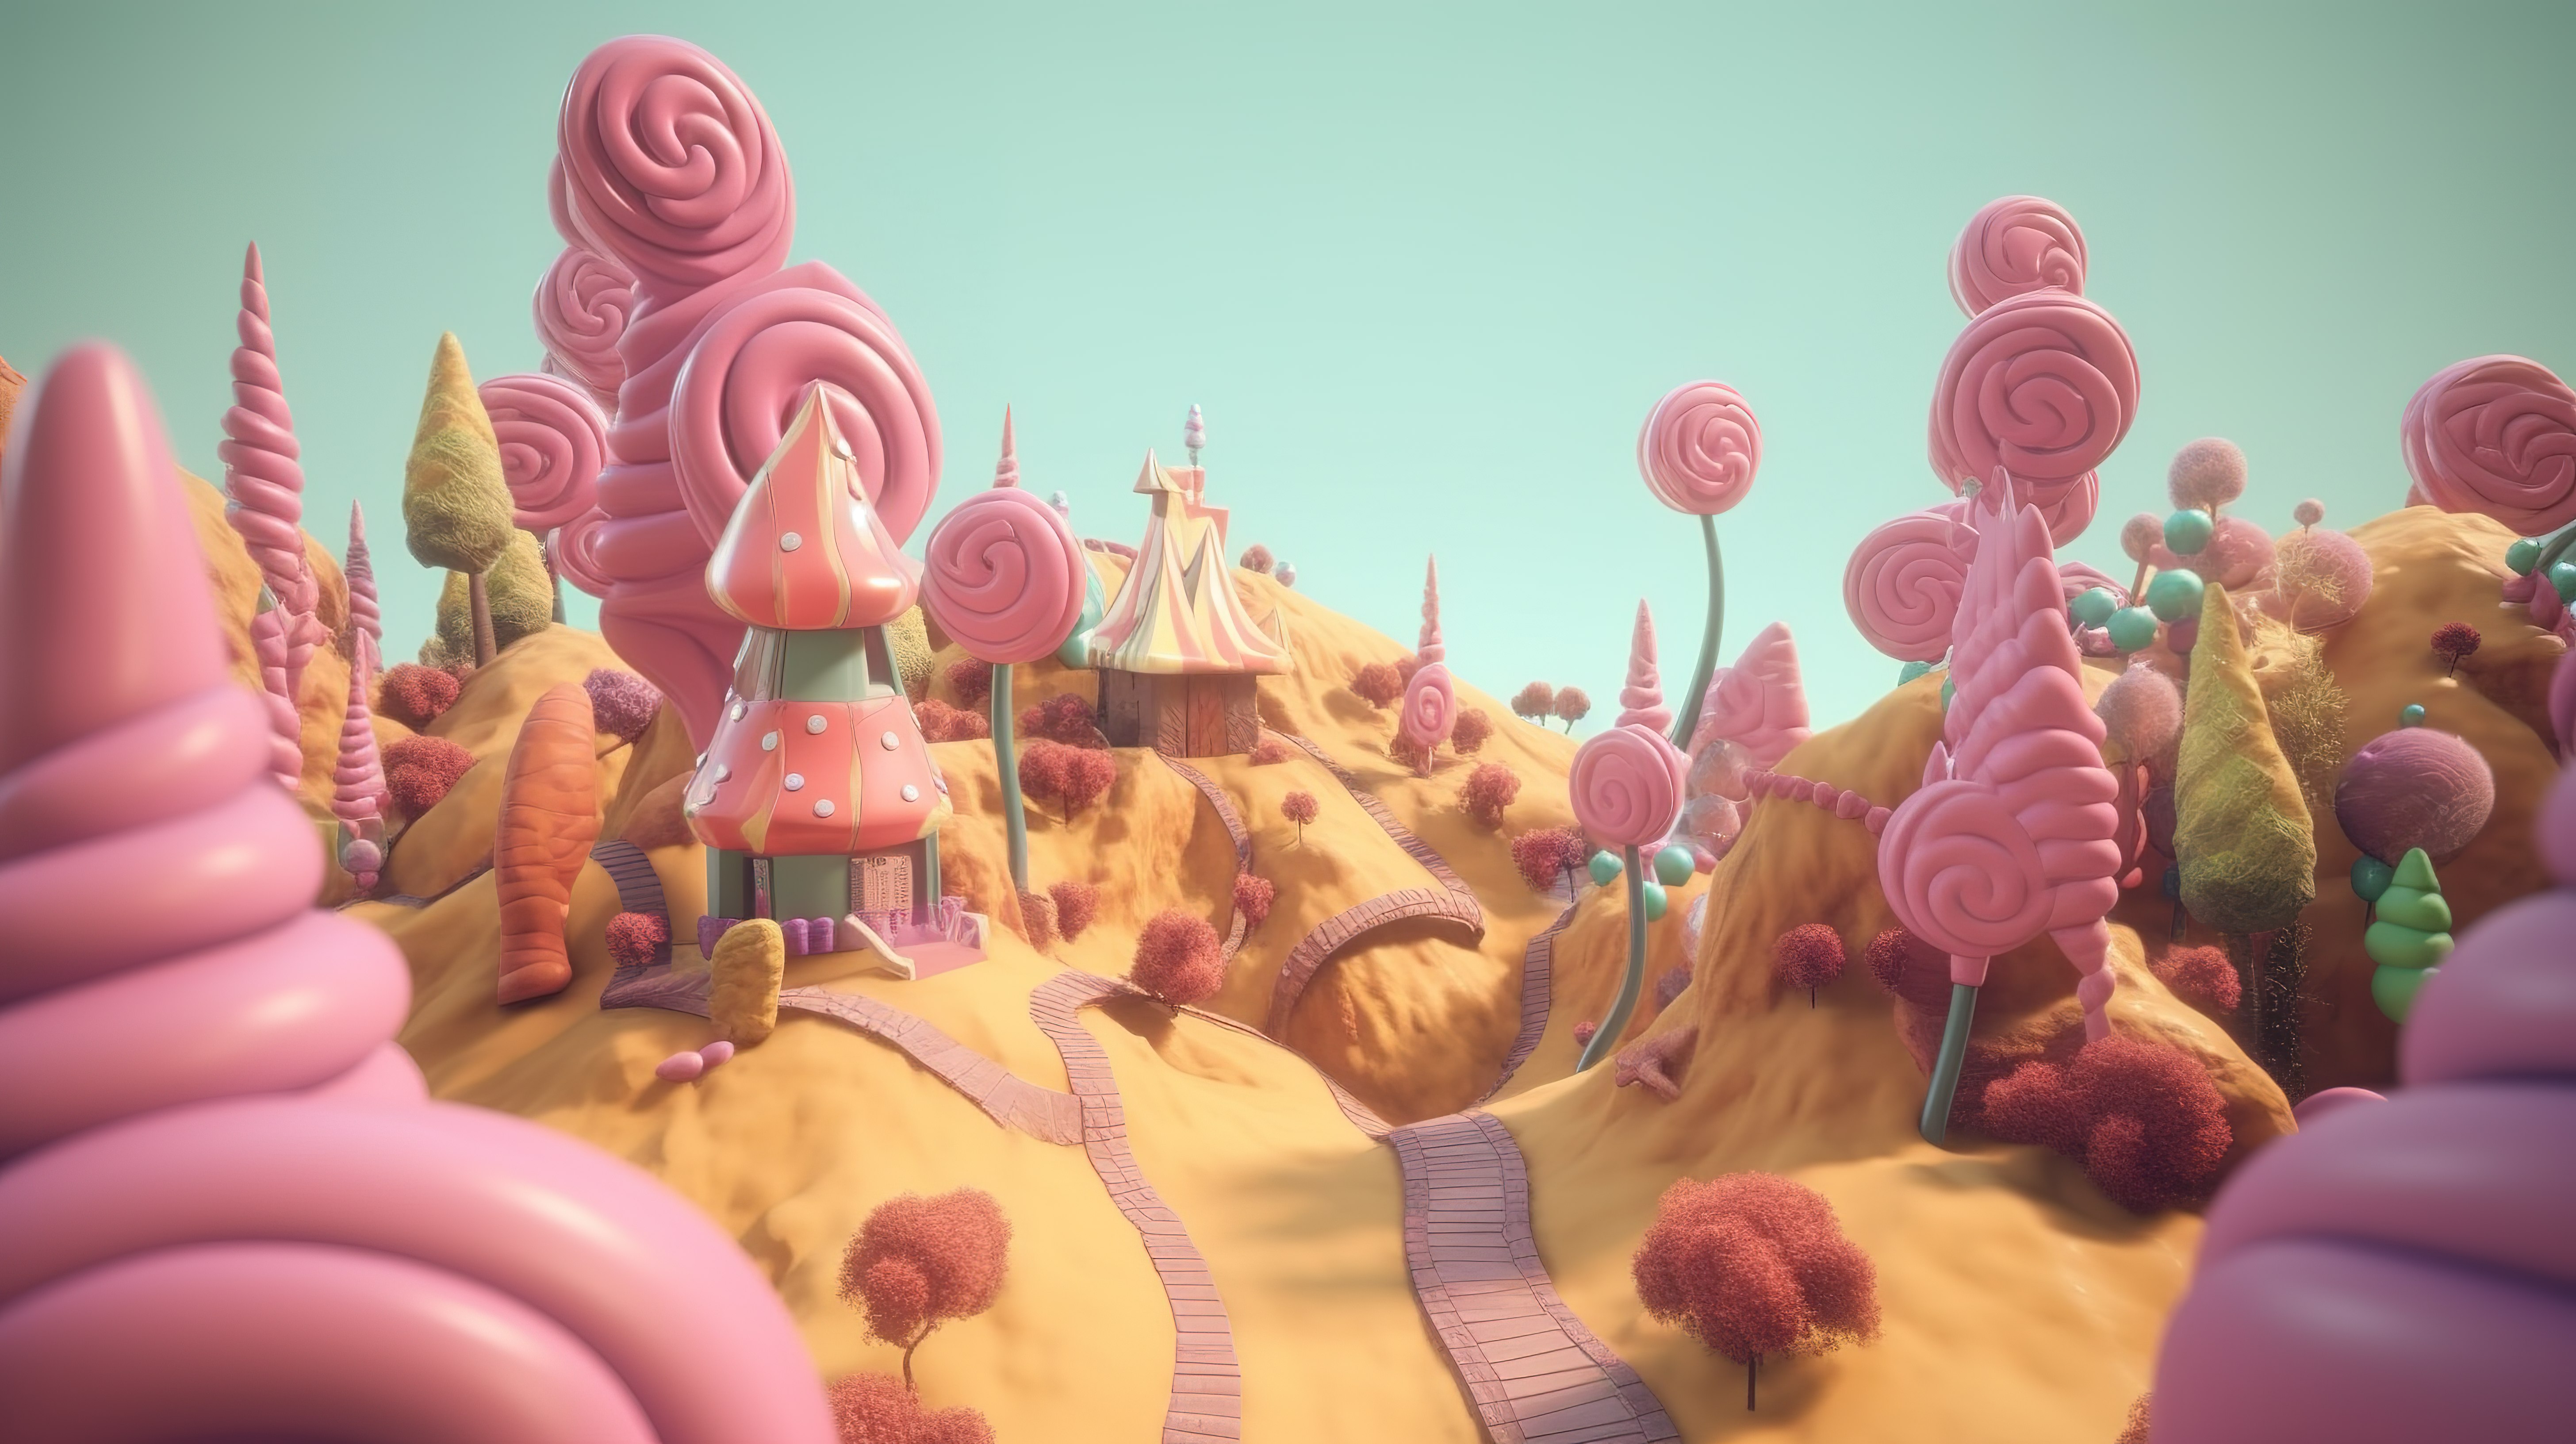 以 3D 图形呈现的经典视频游戏风格糖果世界图片